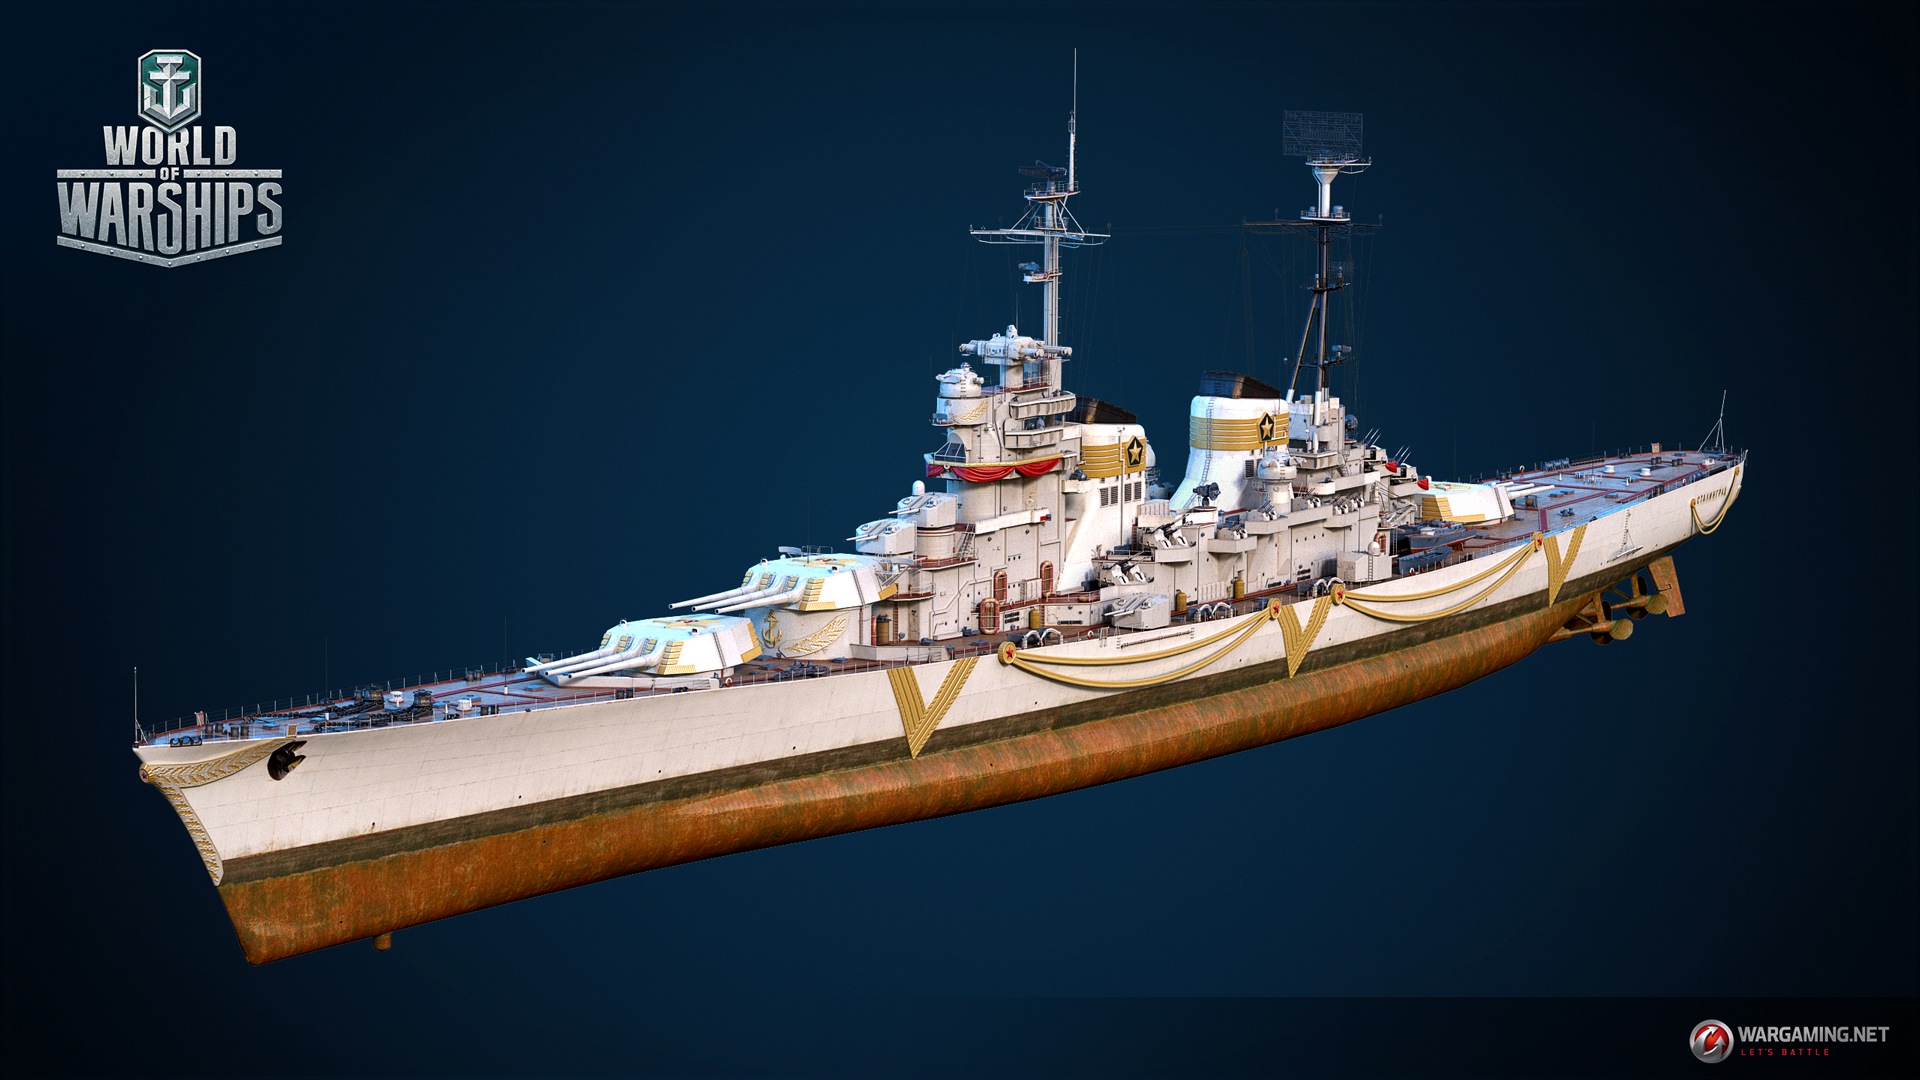 project 82是世界上最大的重型巡洋舰,现在您可以在《战舰世界》中